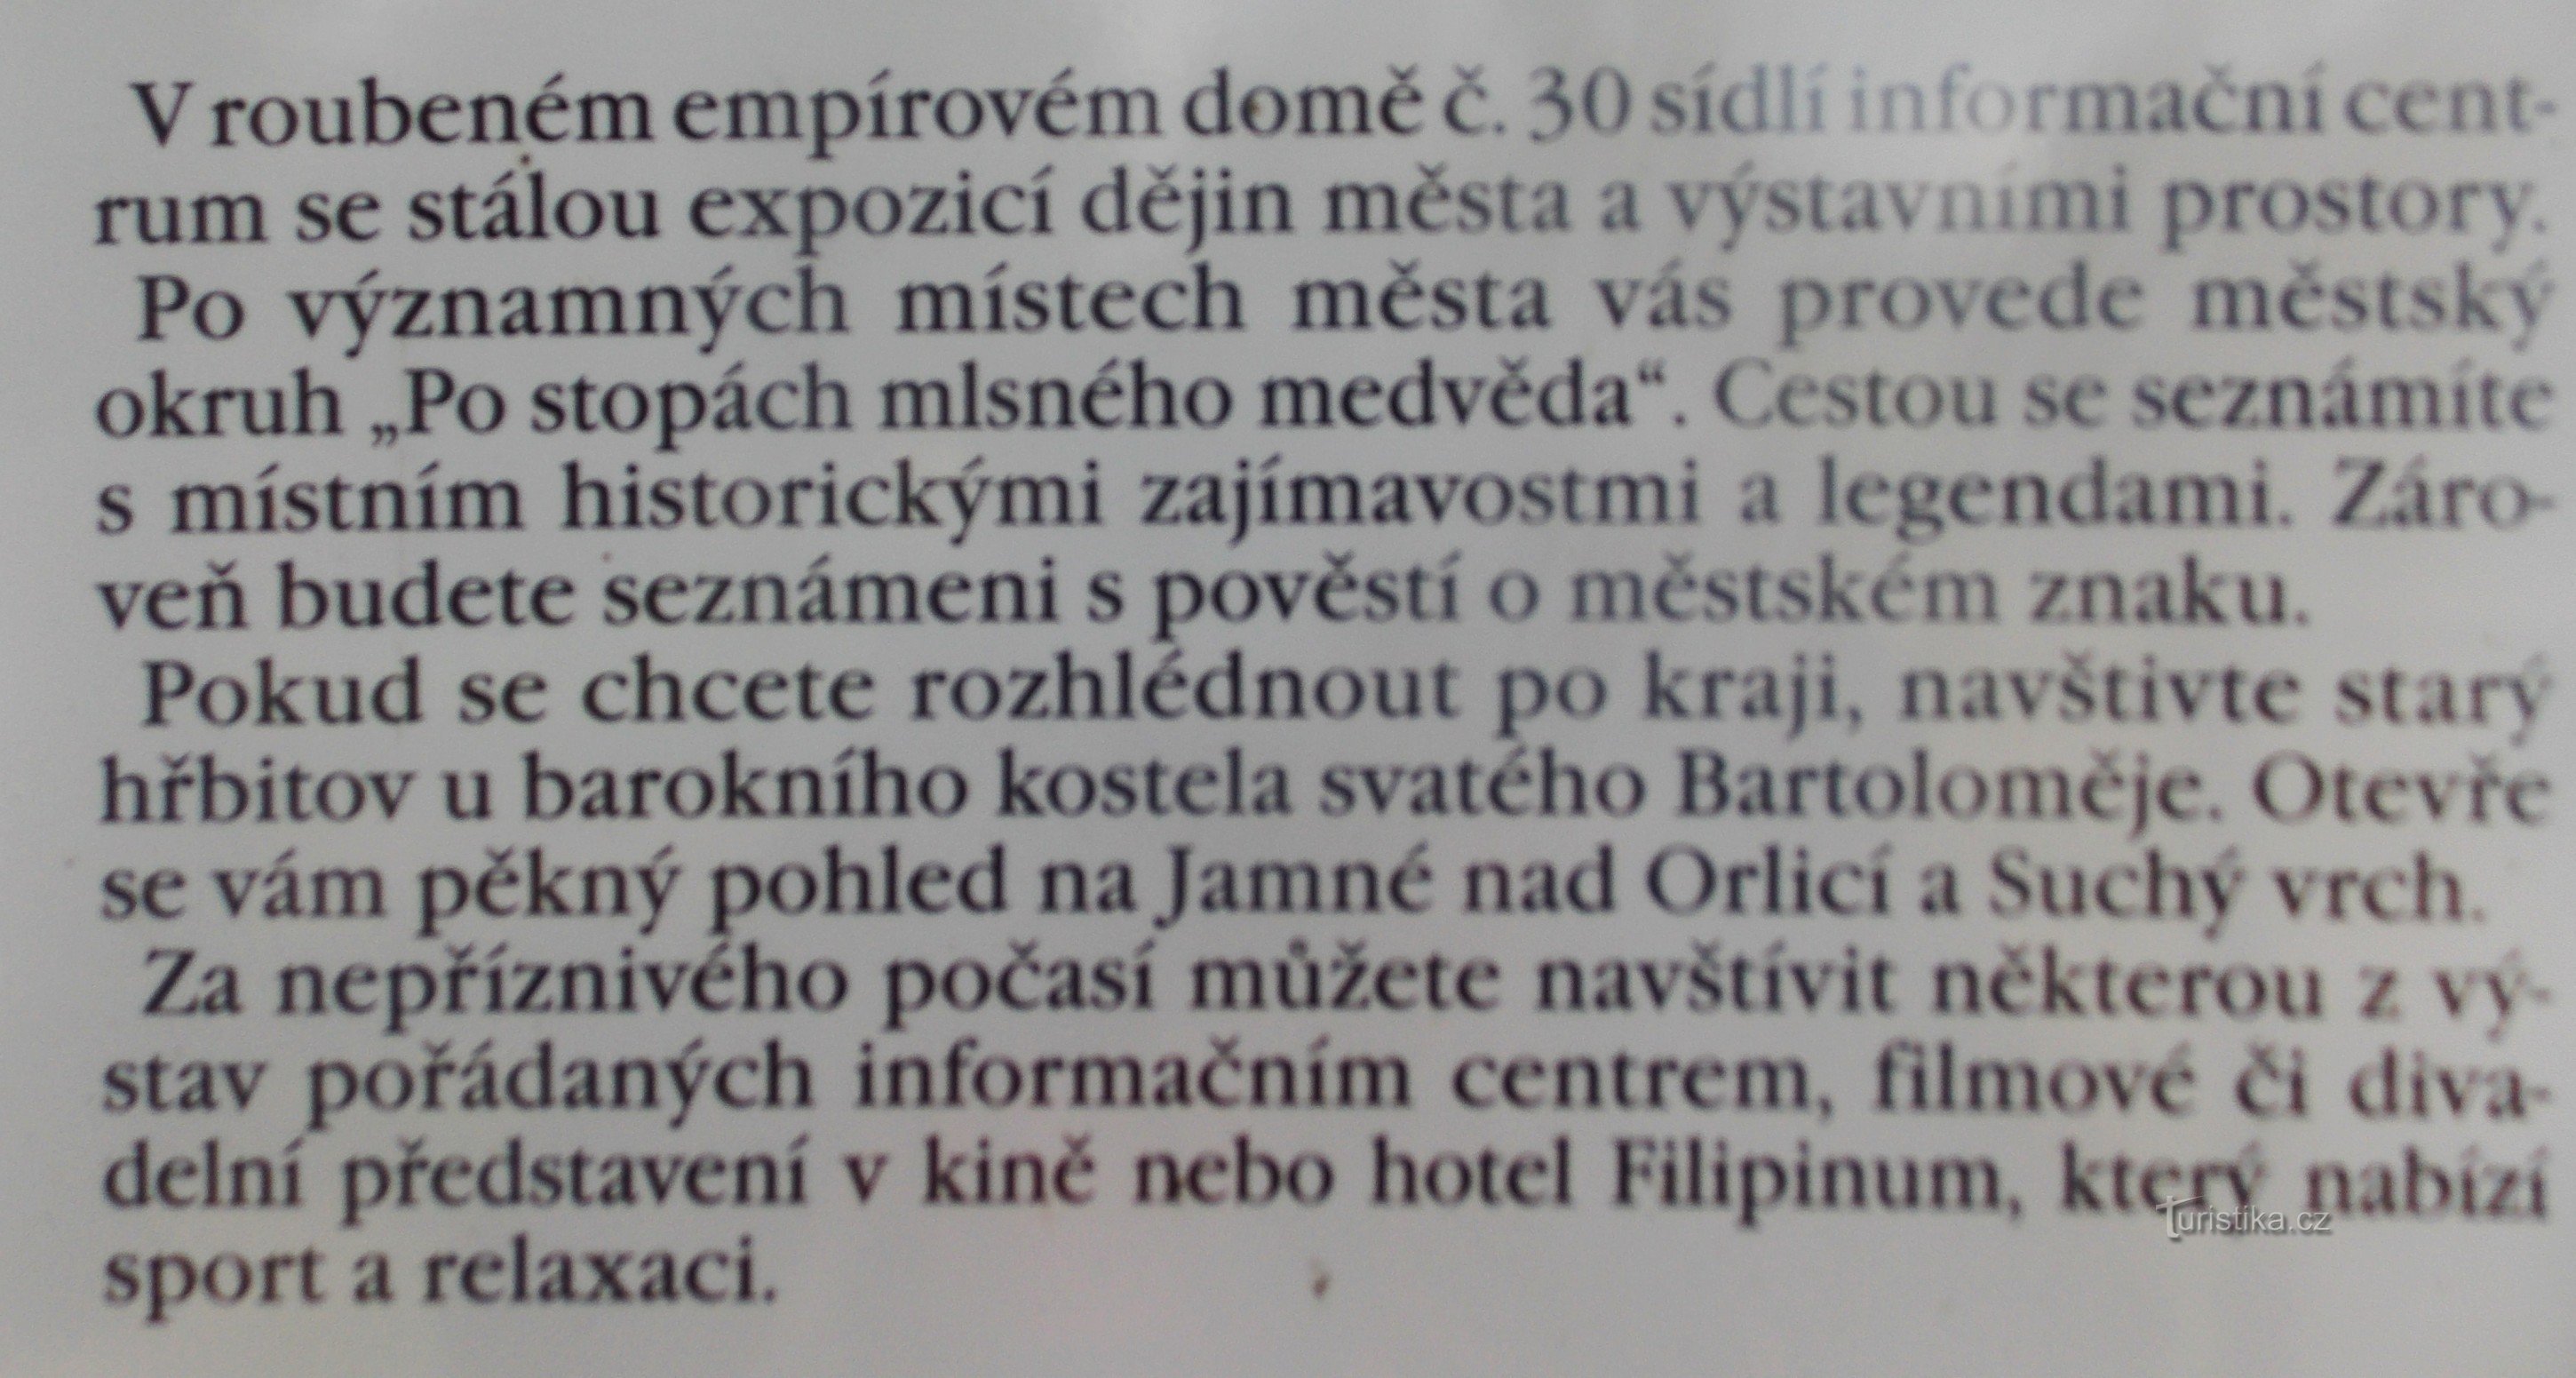 Informatiecentrum in Jablonné nad Orlicí